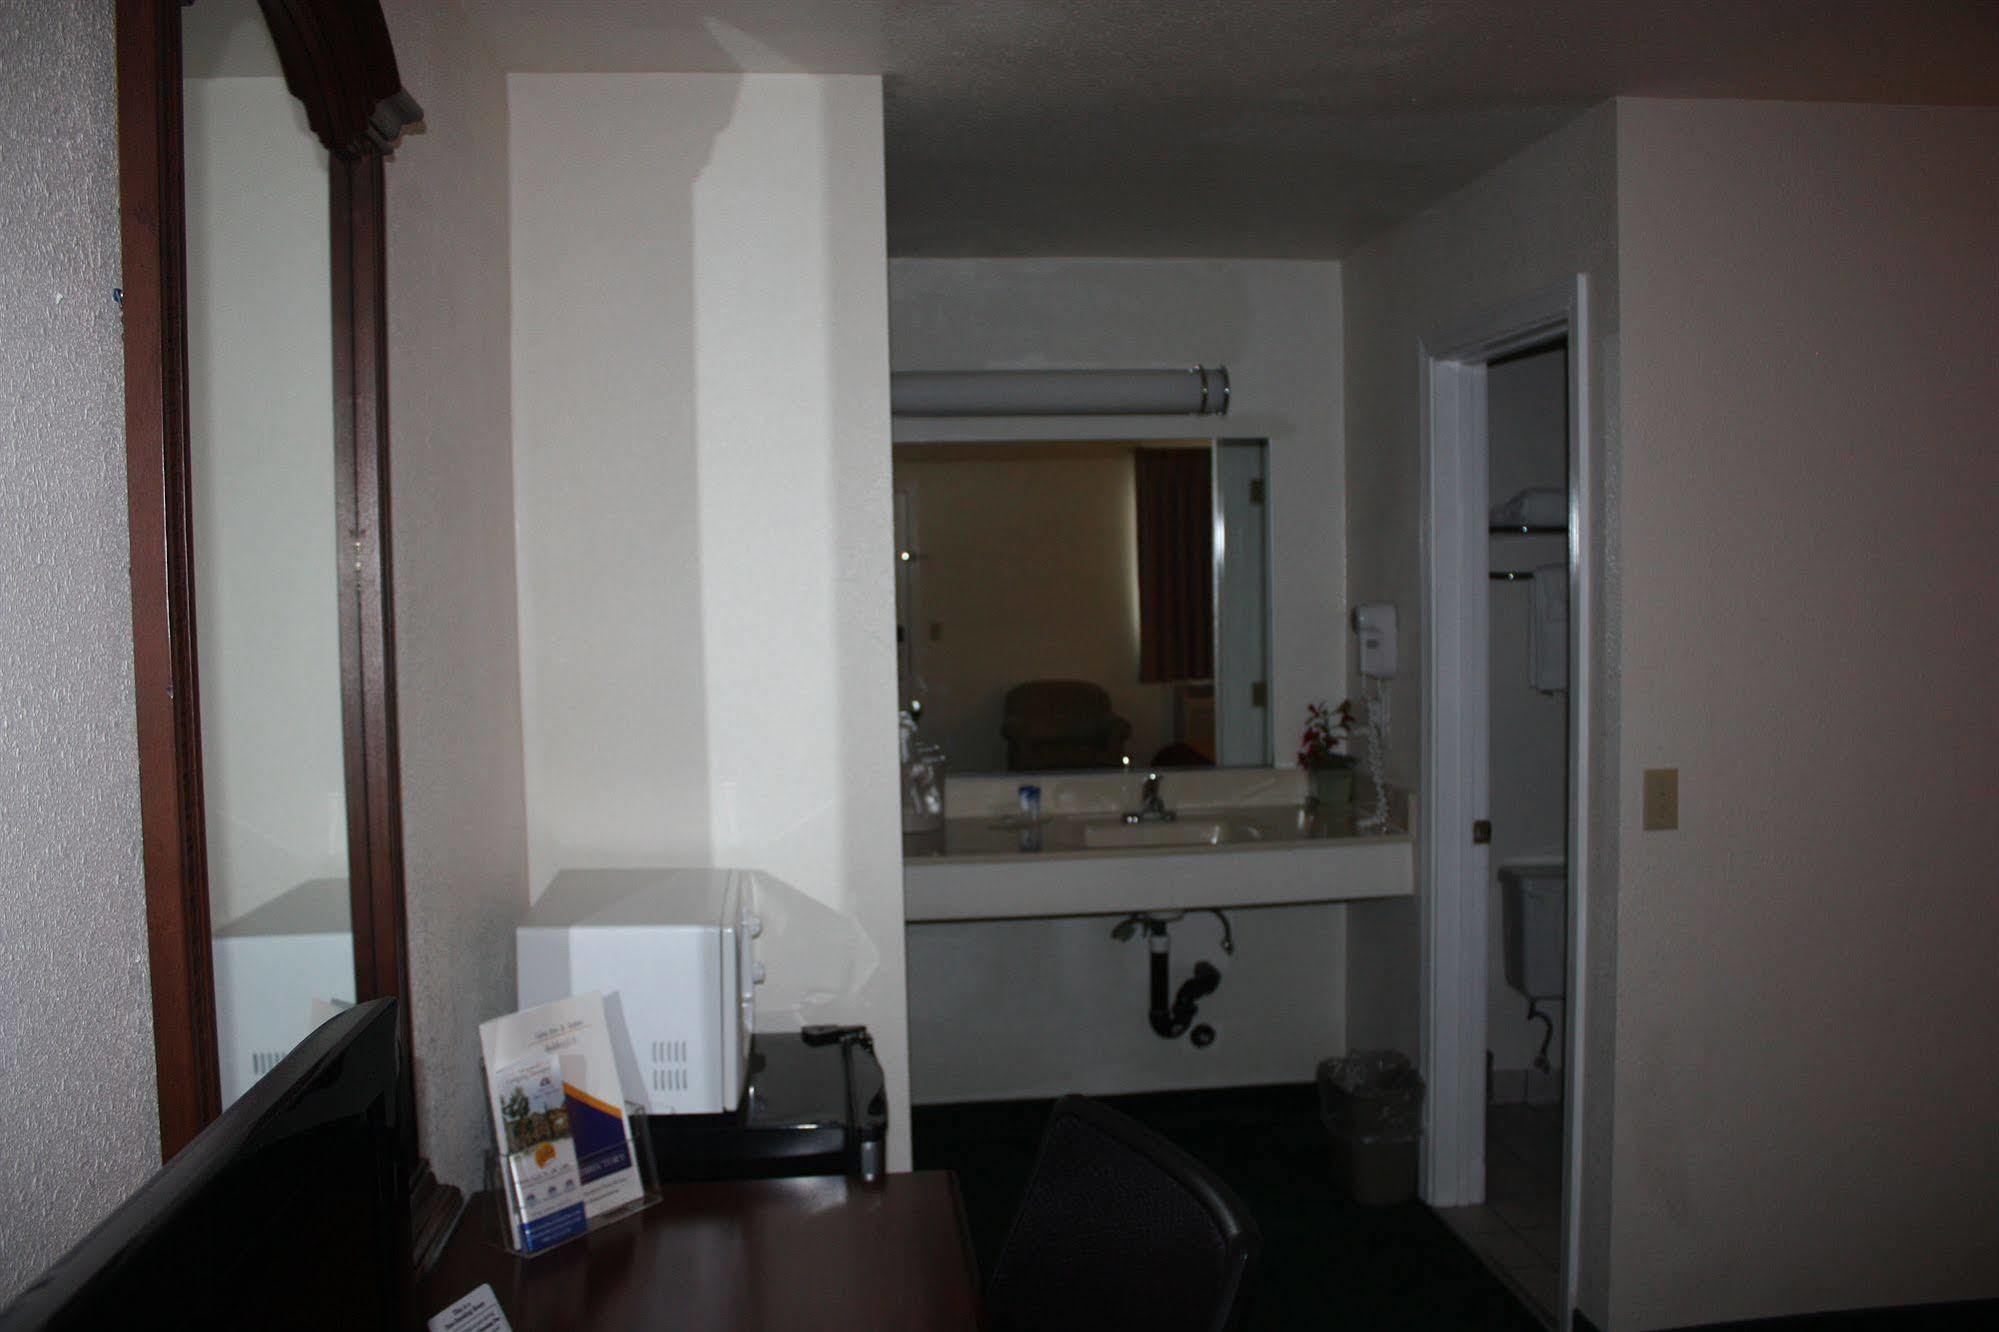 Value Inn & Suites Redding Exterior photo